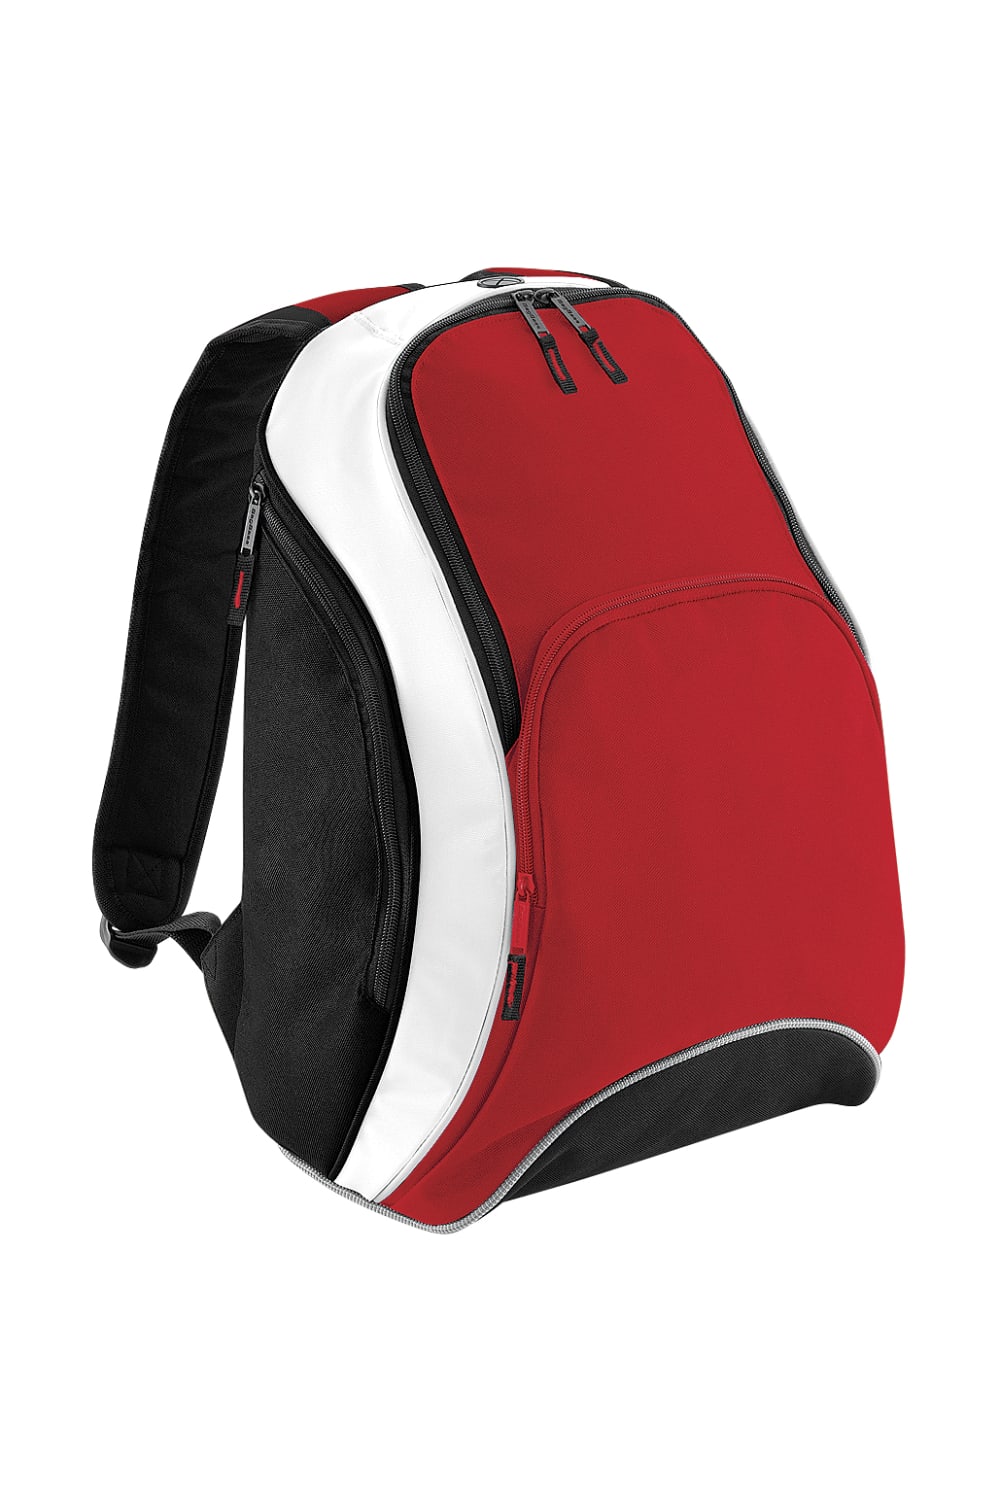 Teamwear Backpack/Rucksack, 21 Liters - Classic Red/Black/White